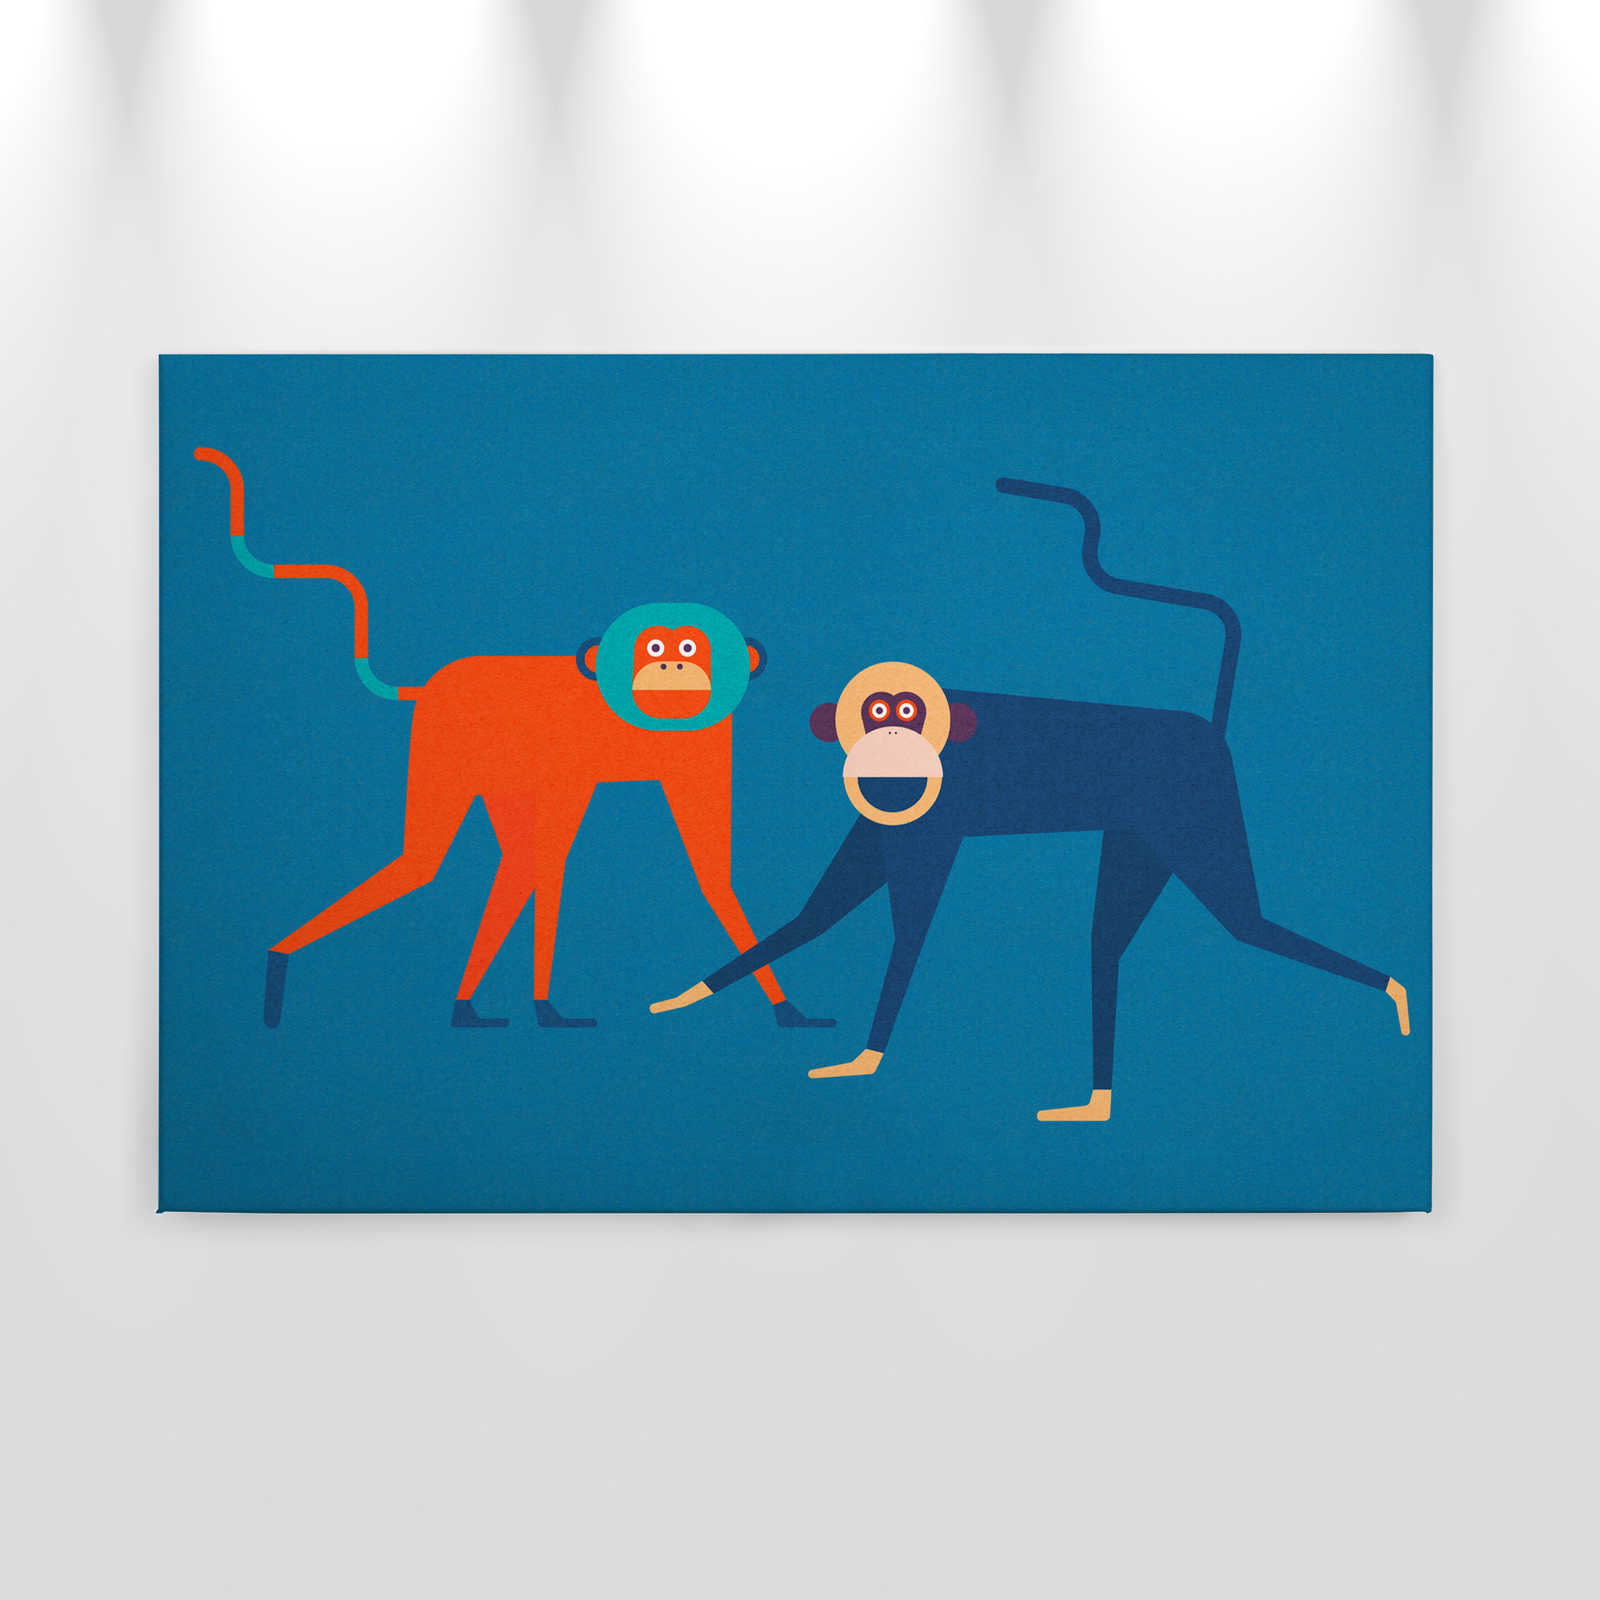             Monkey Business 2 - Canvas schilderij Apenbende in komische stijl - Kartonnen structuur - 0,90 m x 0,60 m
        